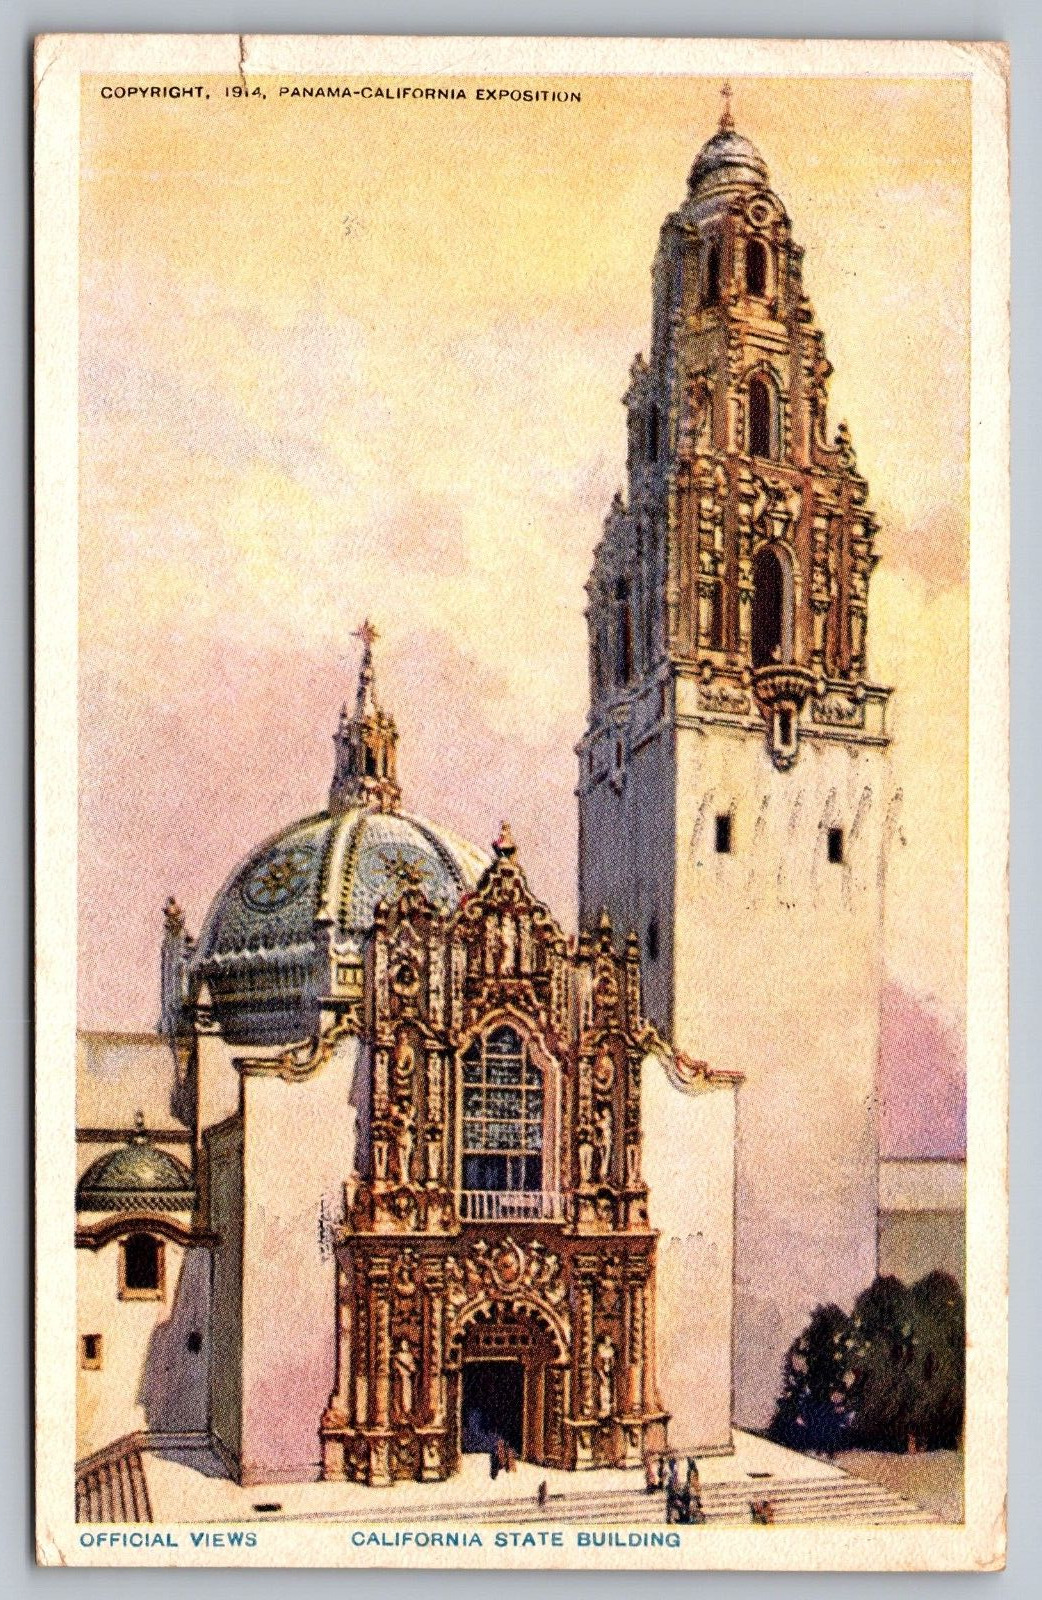 California State Building Antique Postcard c.1914 / Panama-California Exposition